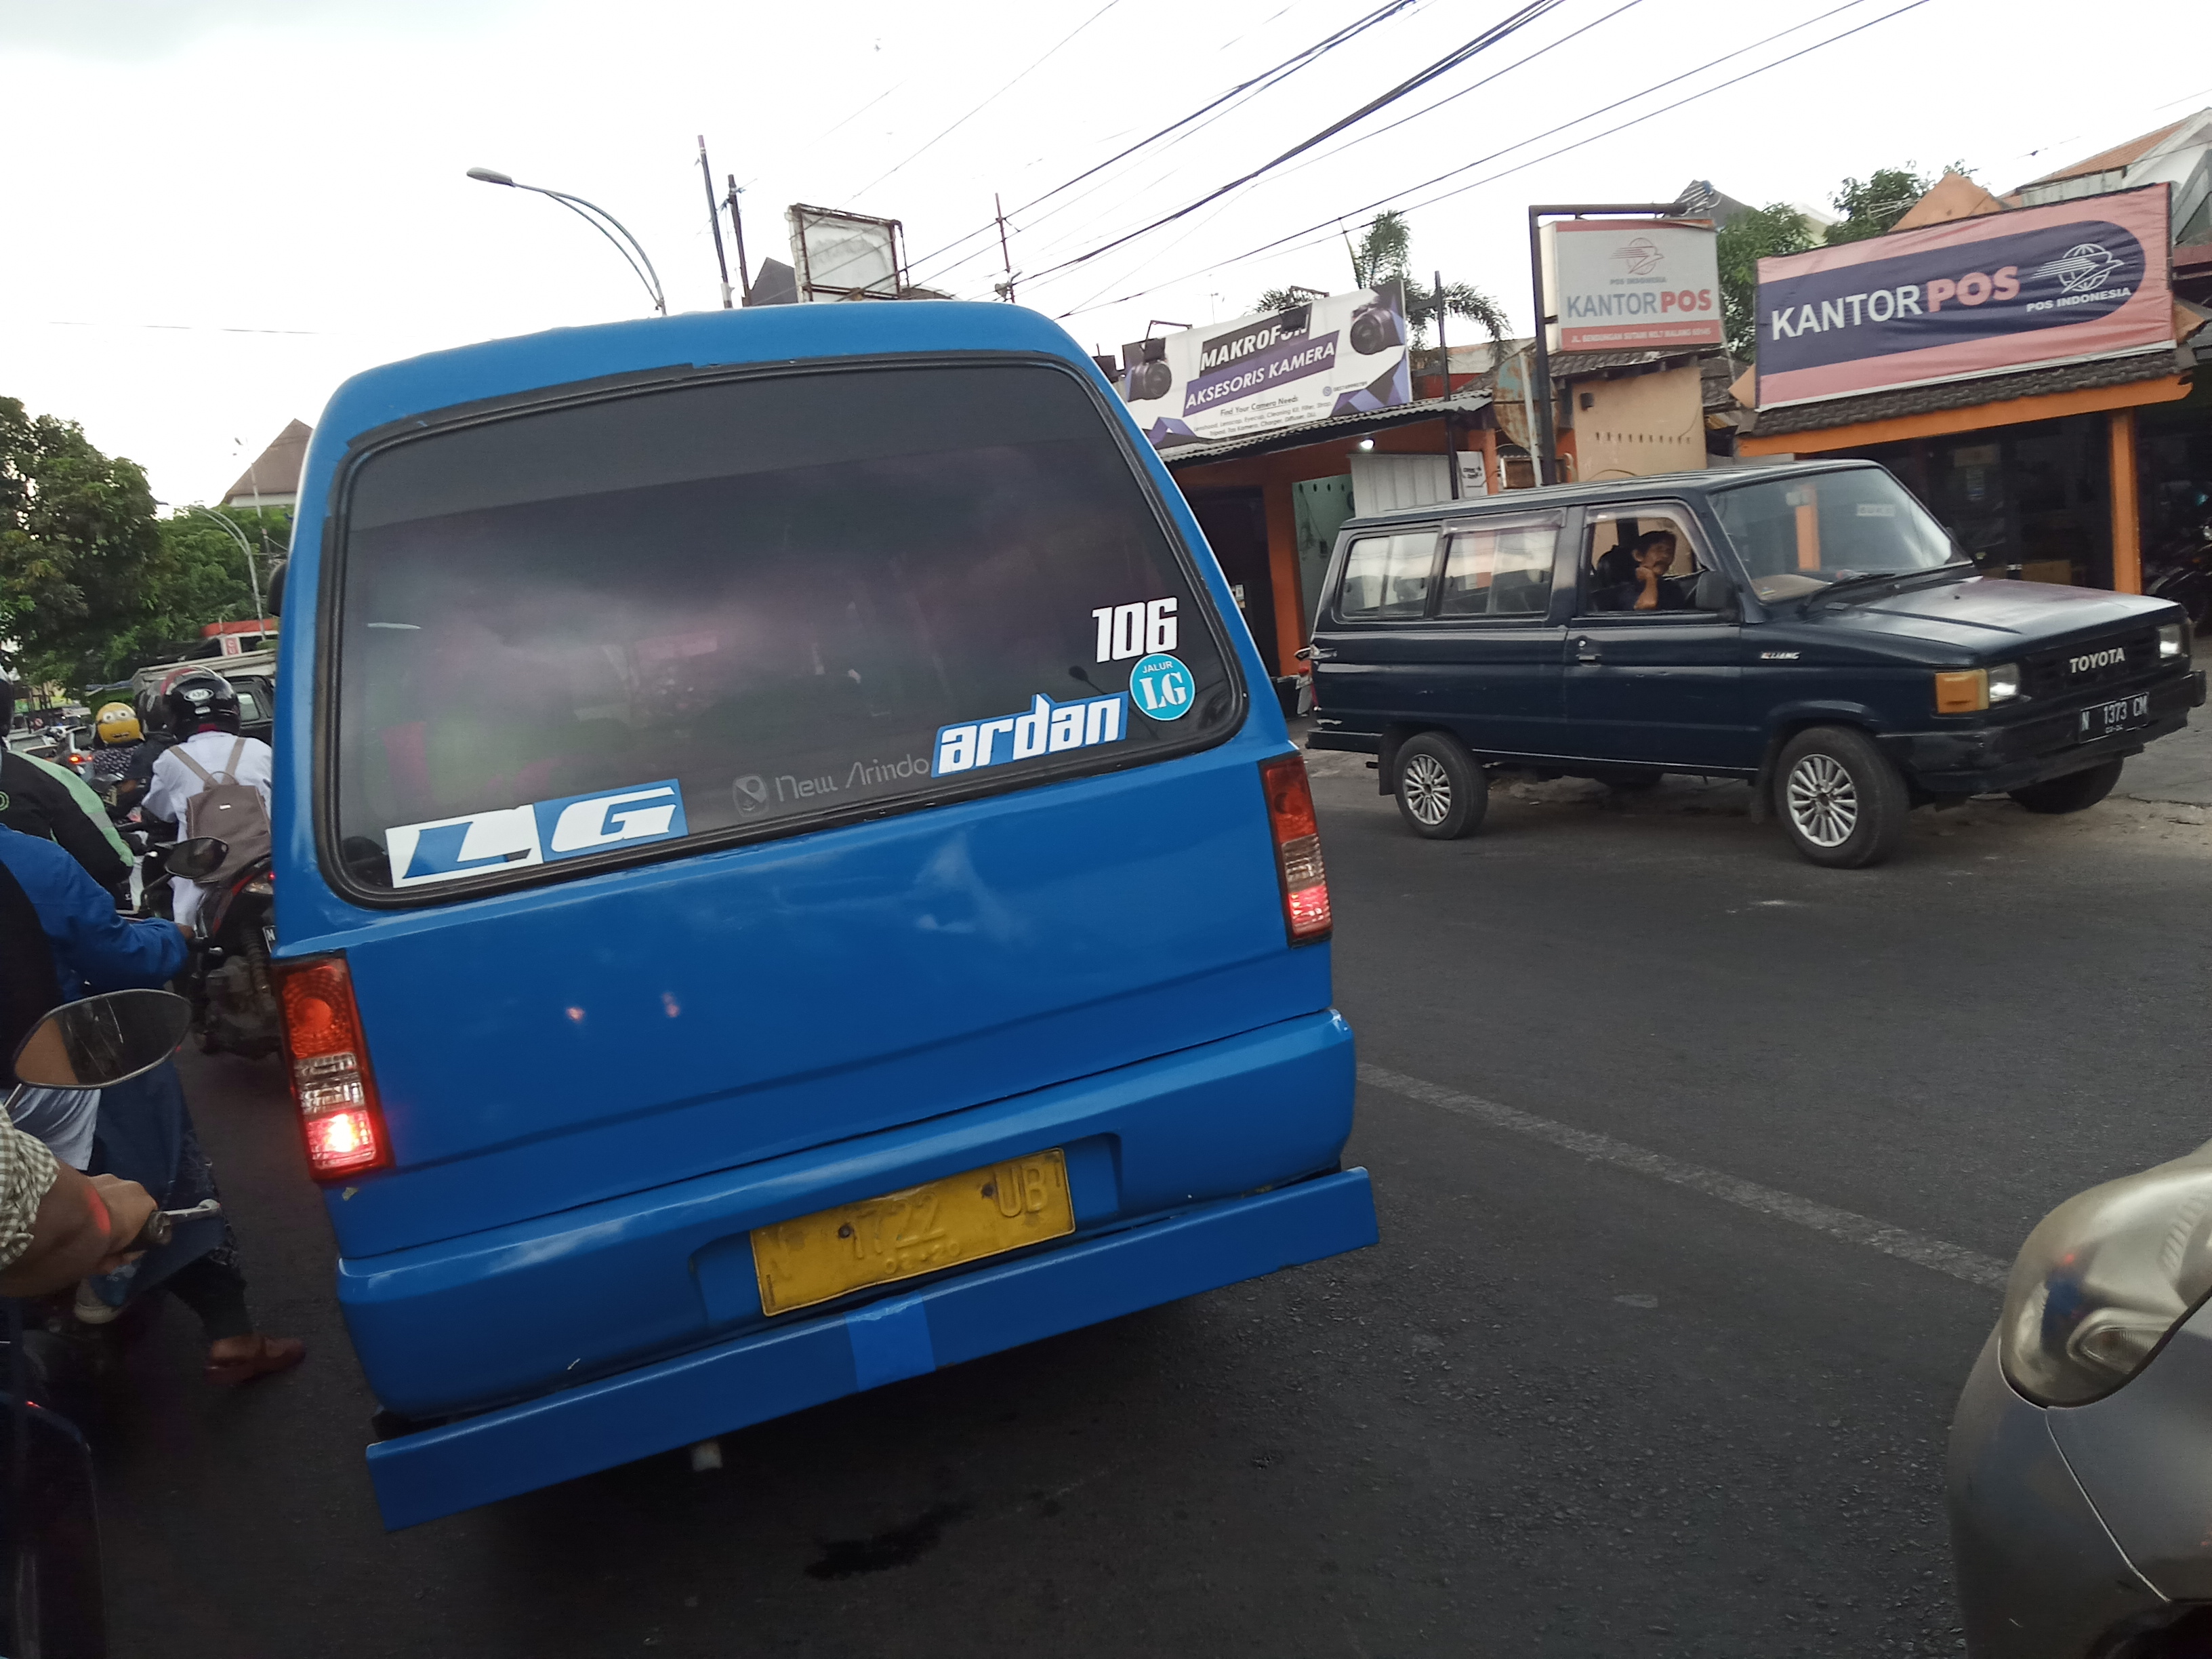 Trayek angkot jurusan Landungsari-Gadang (LG) saat melintasi jalanan Kota Malang. (Foto: Theo/ngopibareng.id)